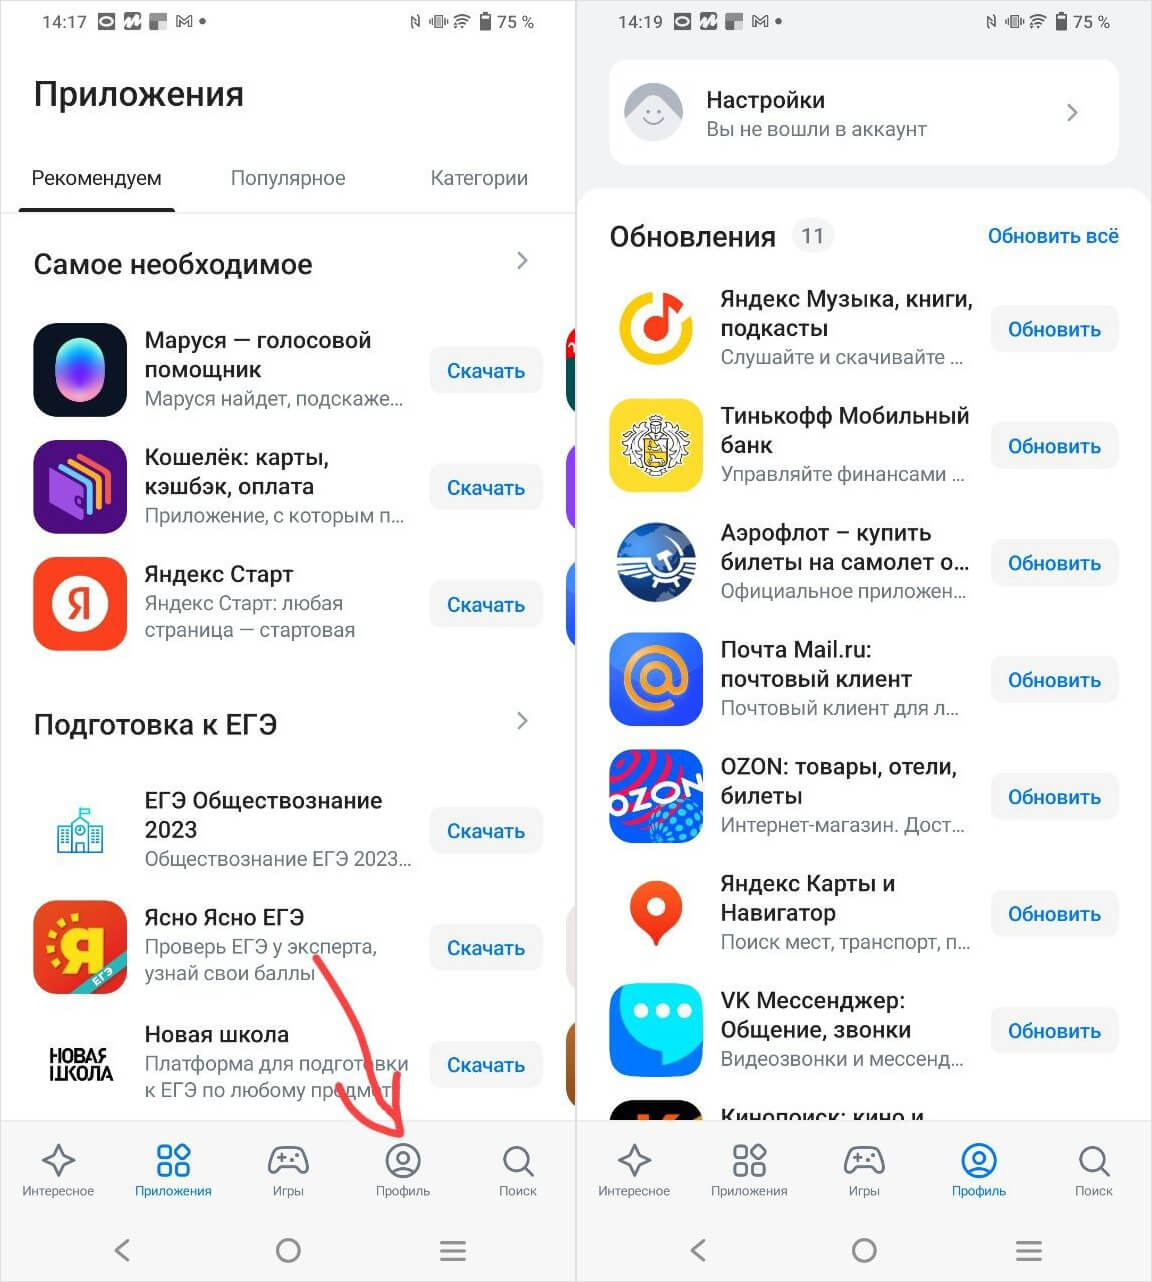 Телеграмм обновить на андроид до последней версии бесплатно русском языке фото 81